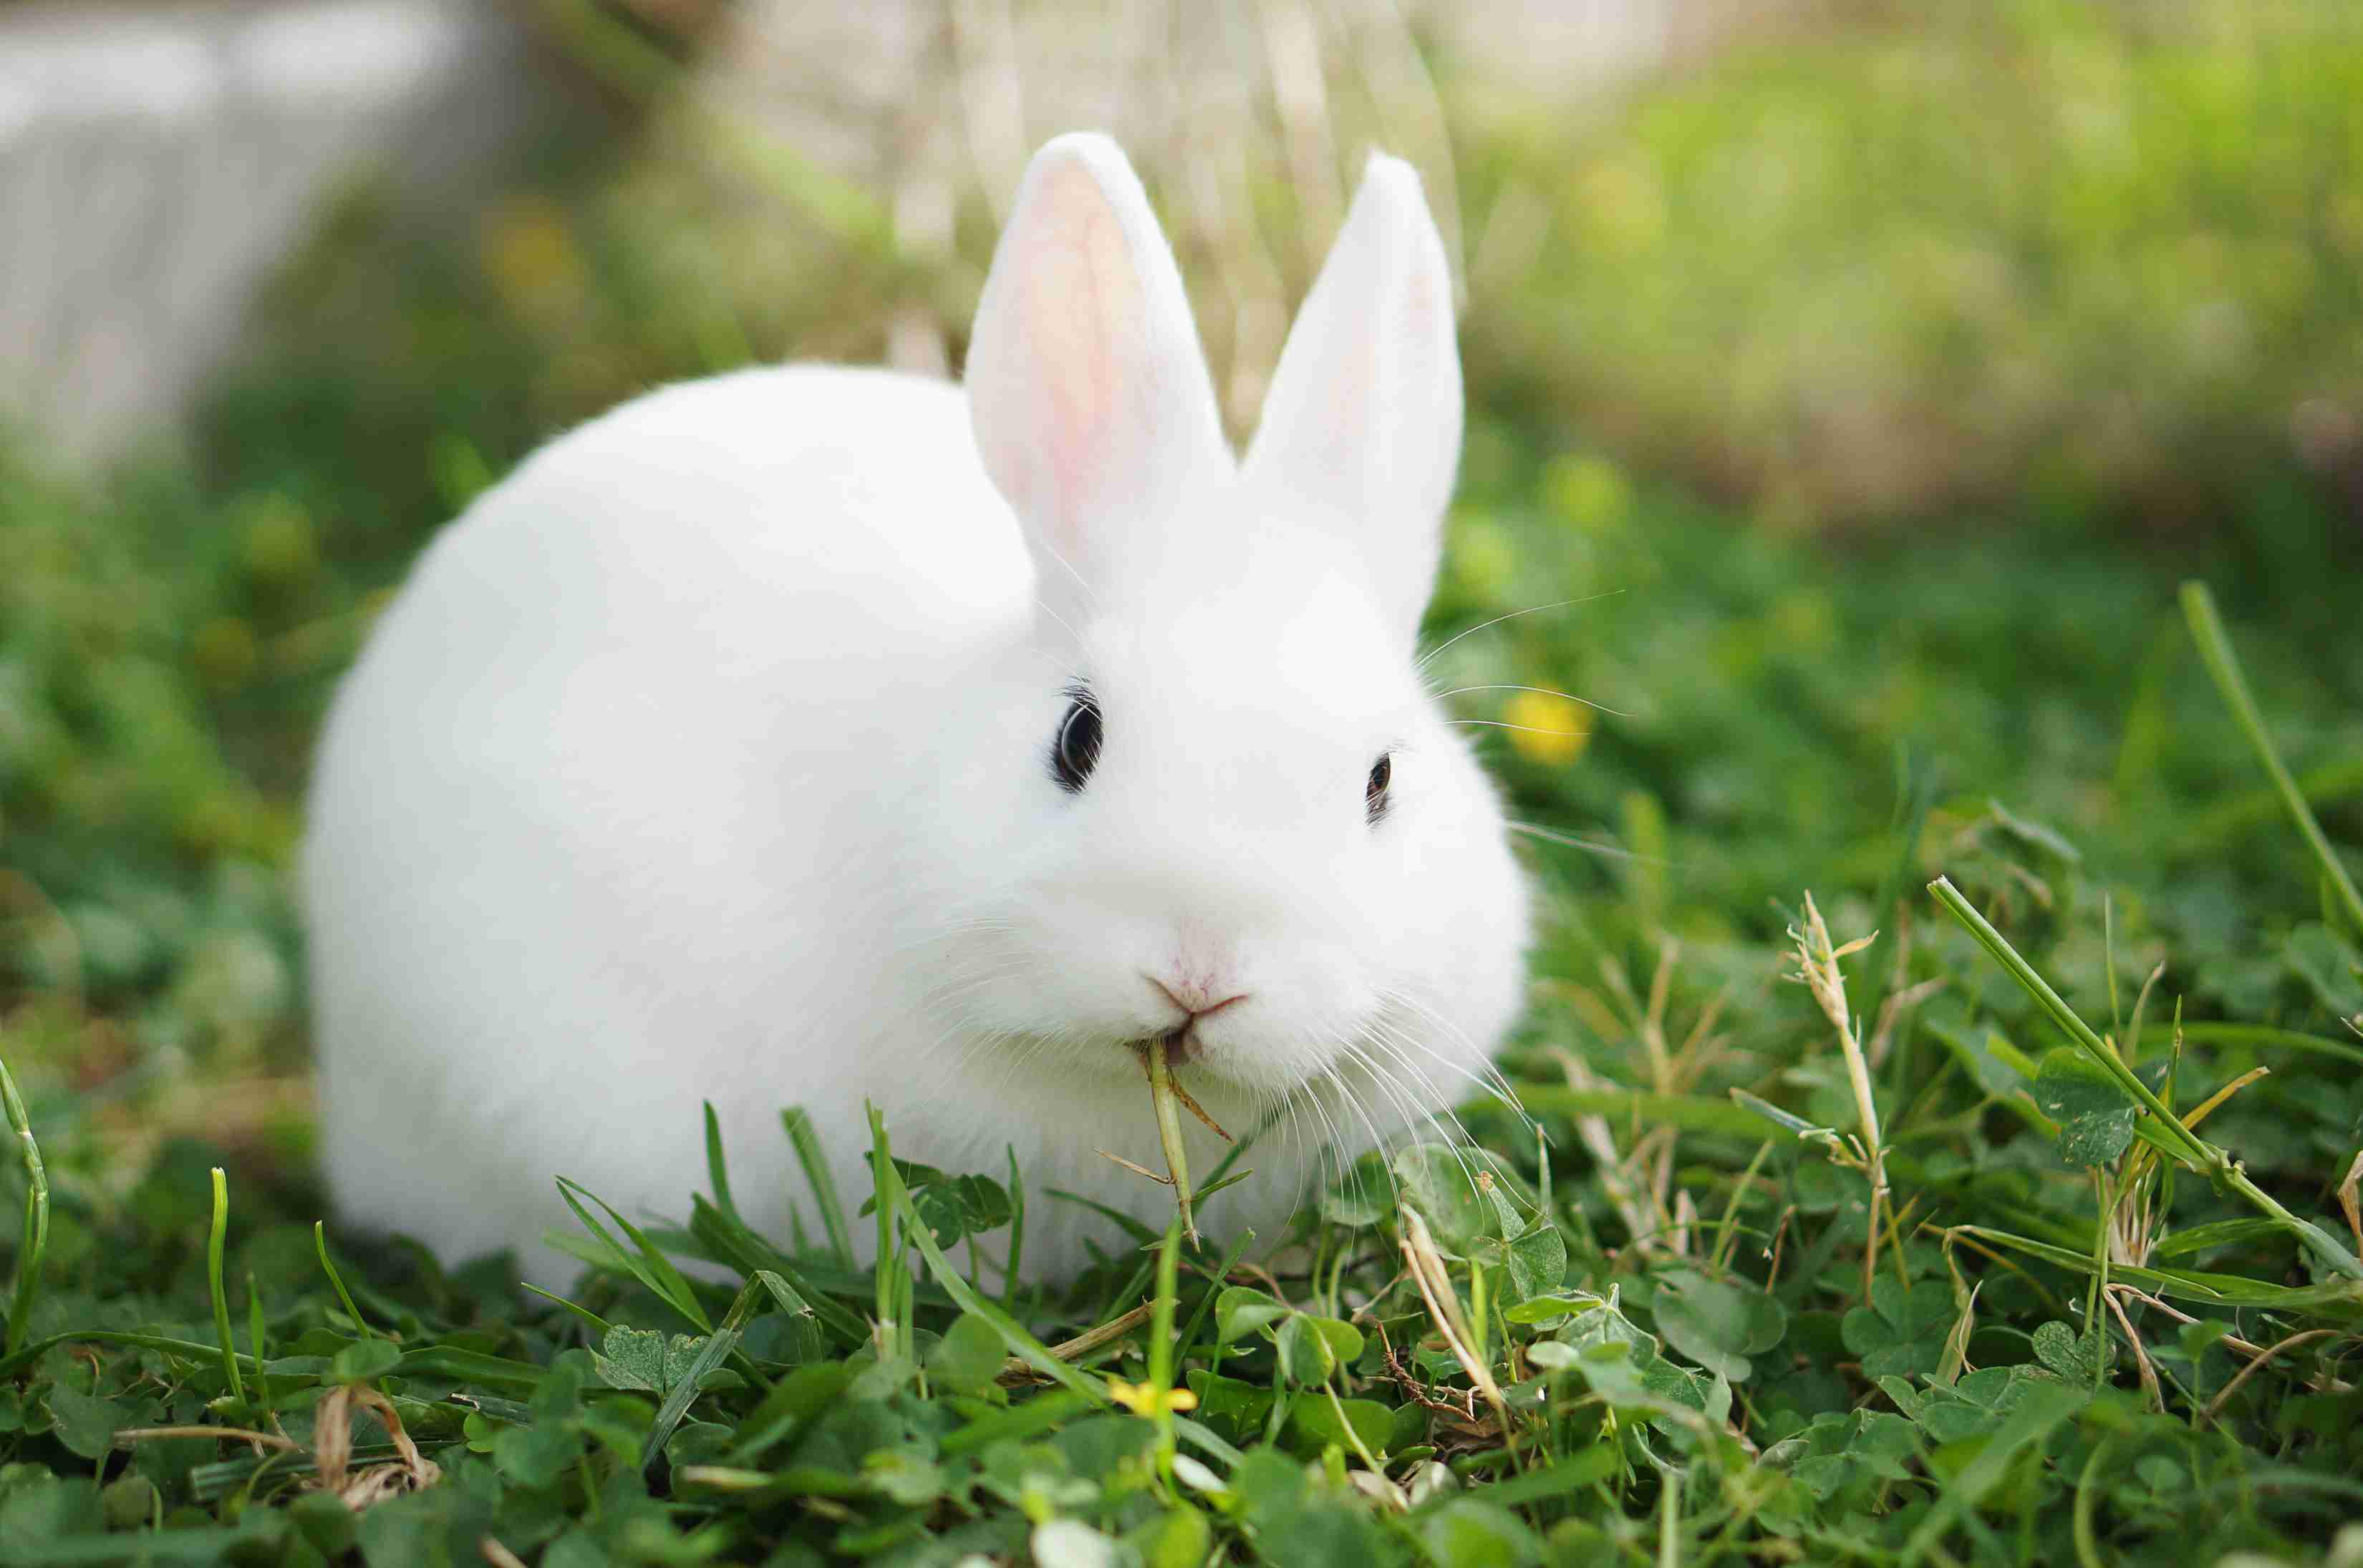 White hotot rabbit eating grass